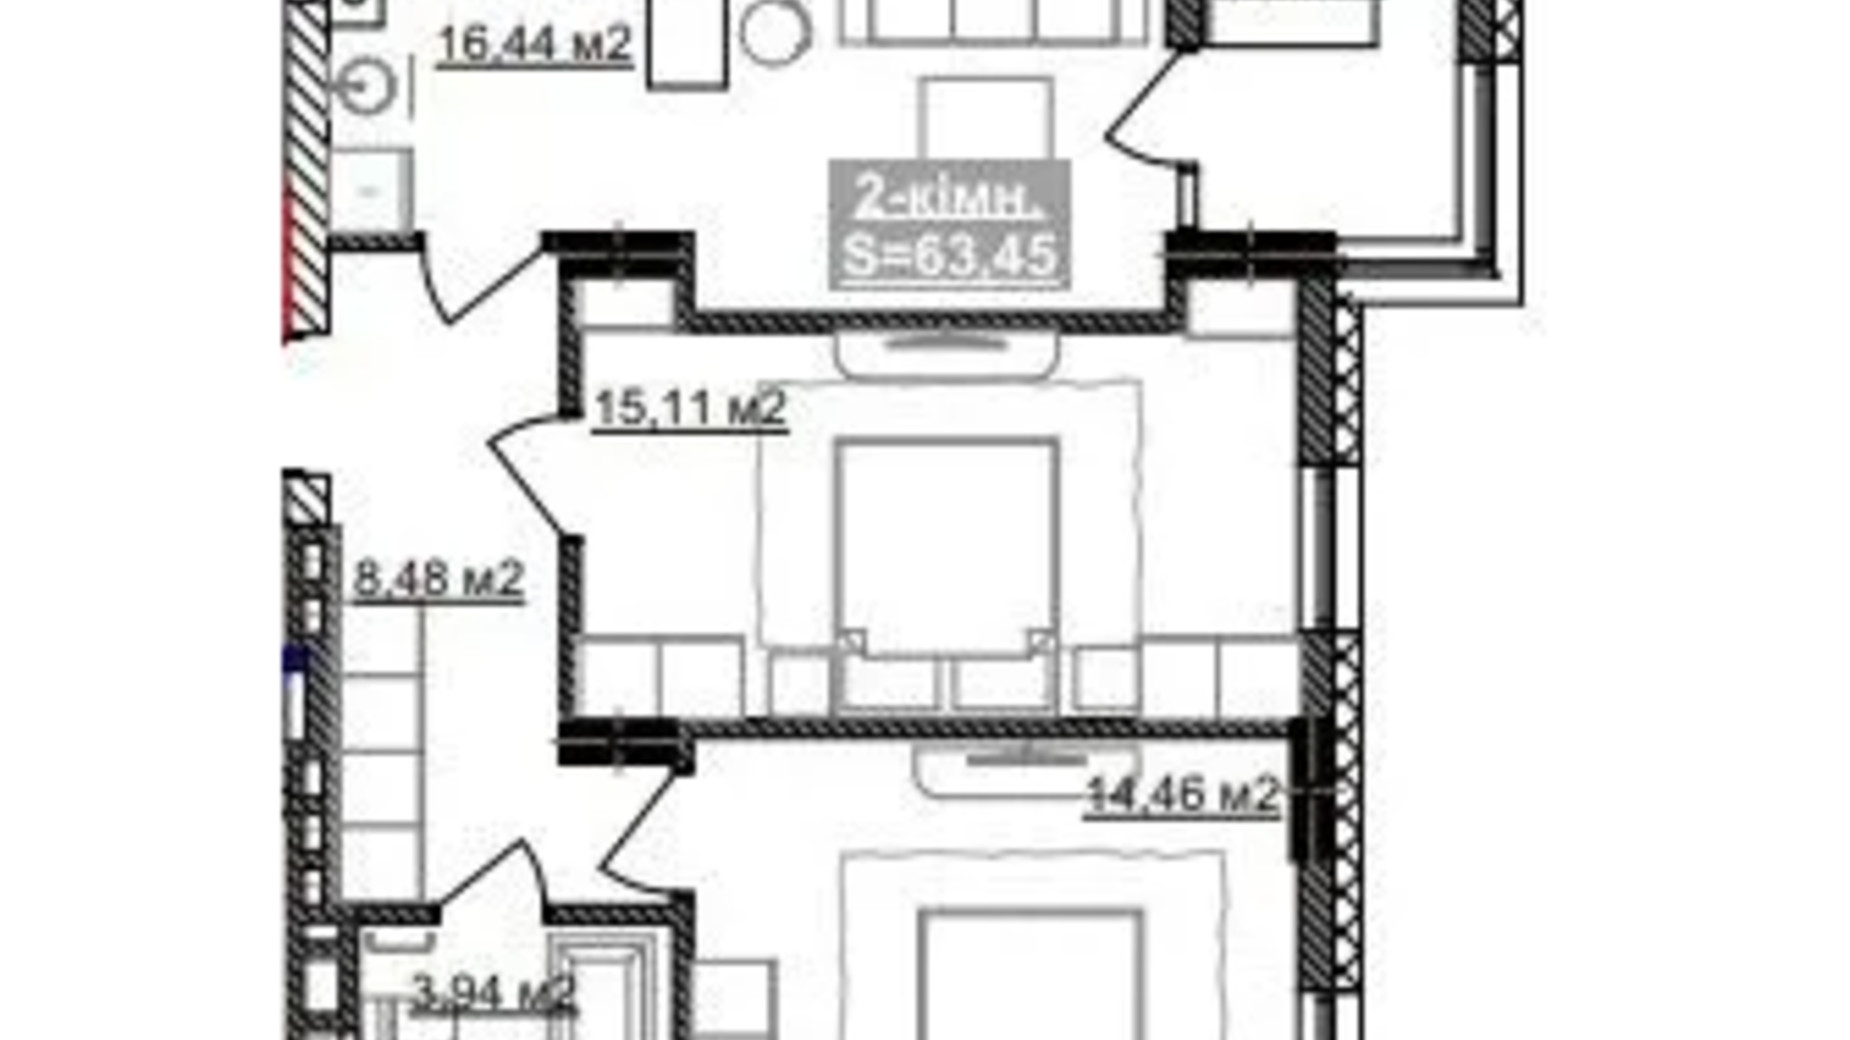 Планування 2-кімнатної квартири в ЖК Паркове містечко (7 черга) 63.45 м², фото 653524